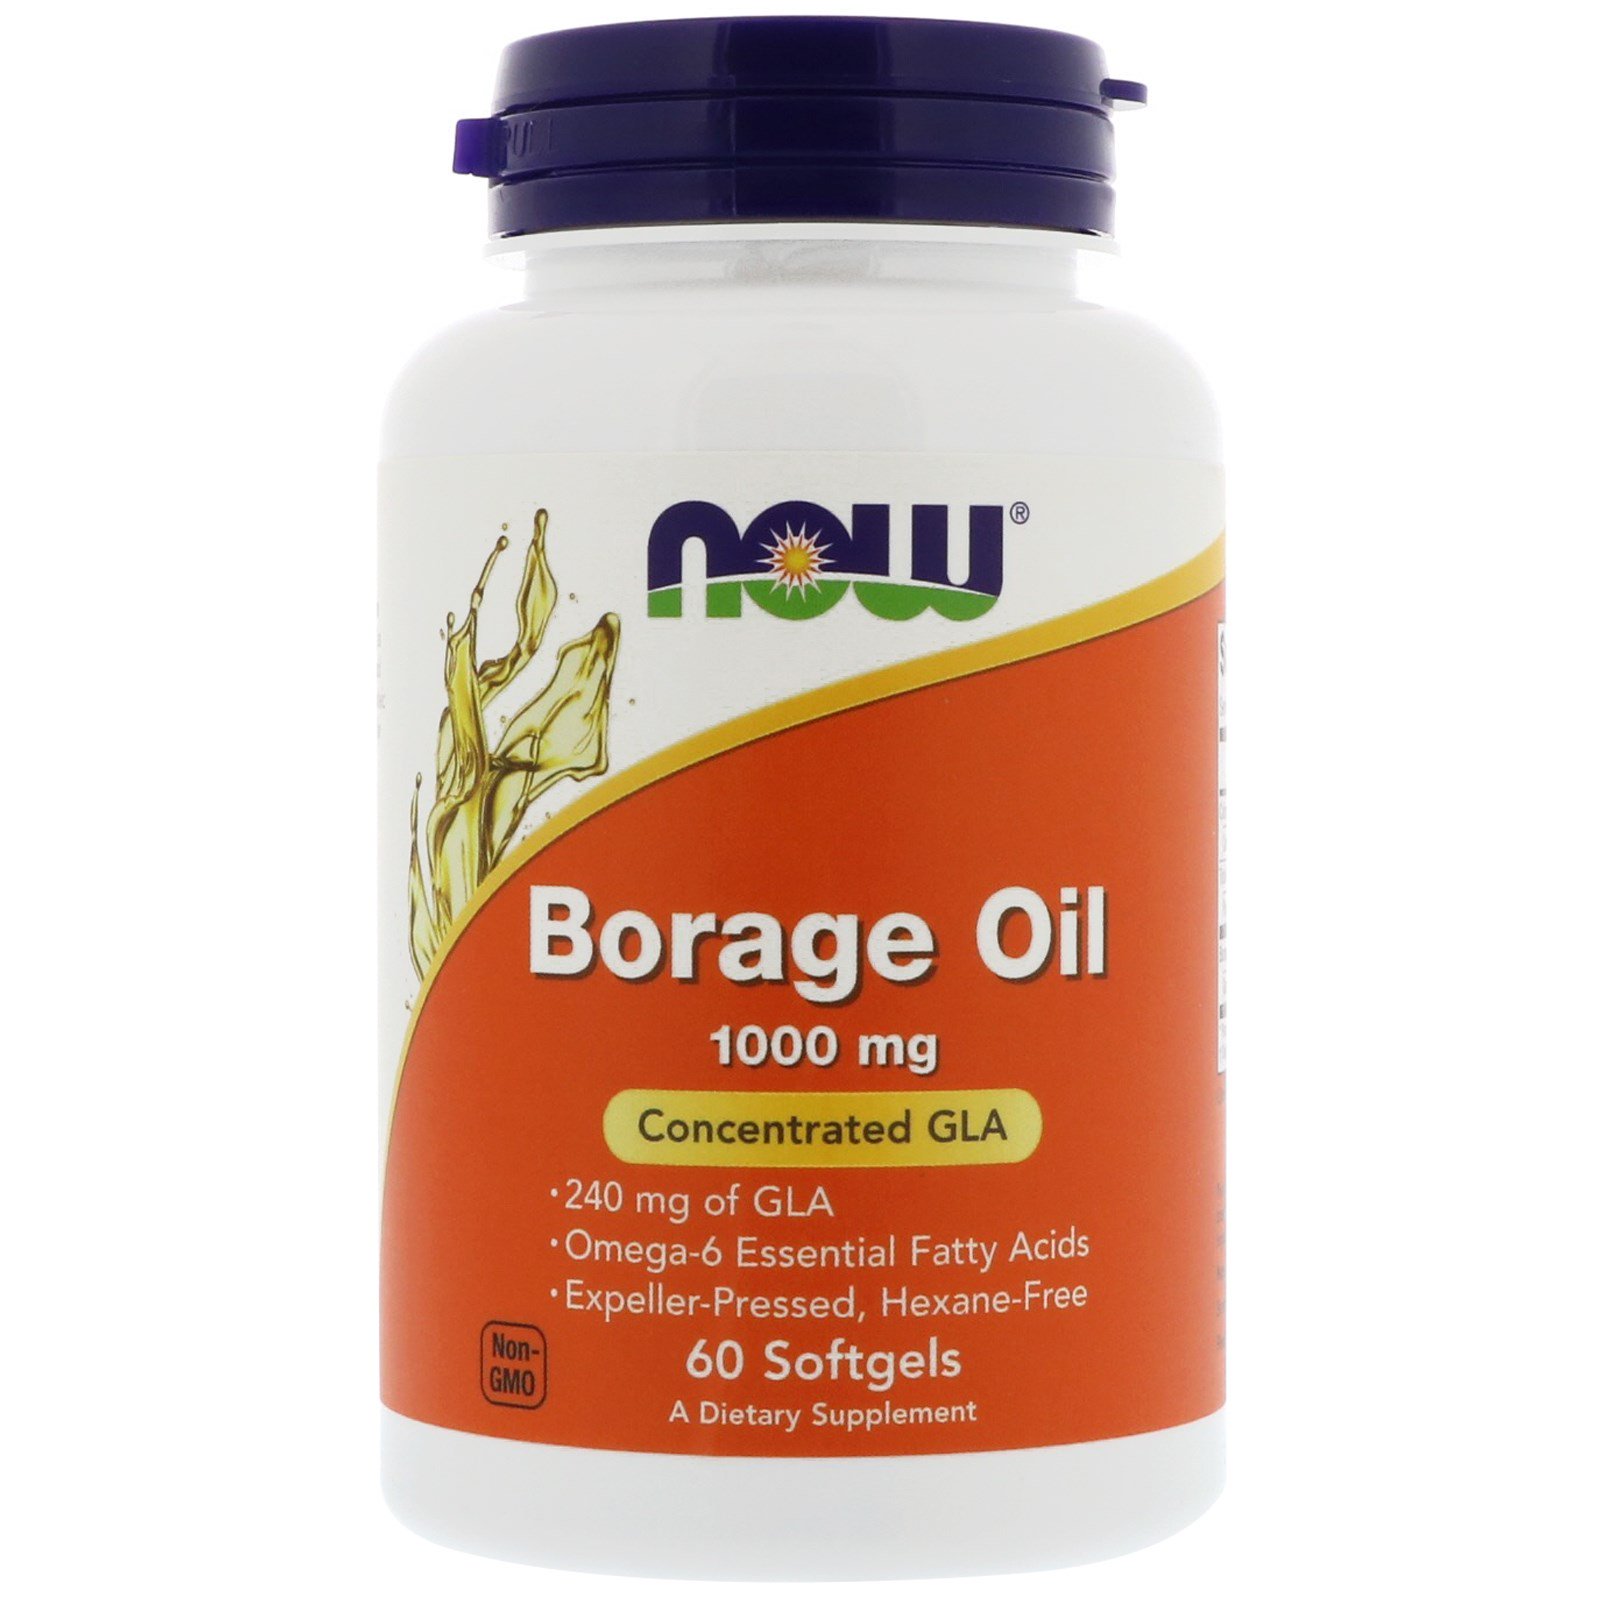 Borage Oil, Масло Бурачника, Гамма-Линолевая Кислота 1000 мг - 60 капсул